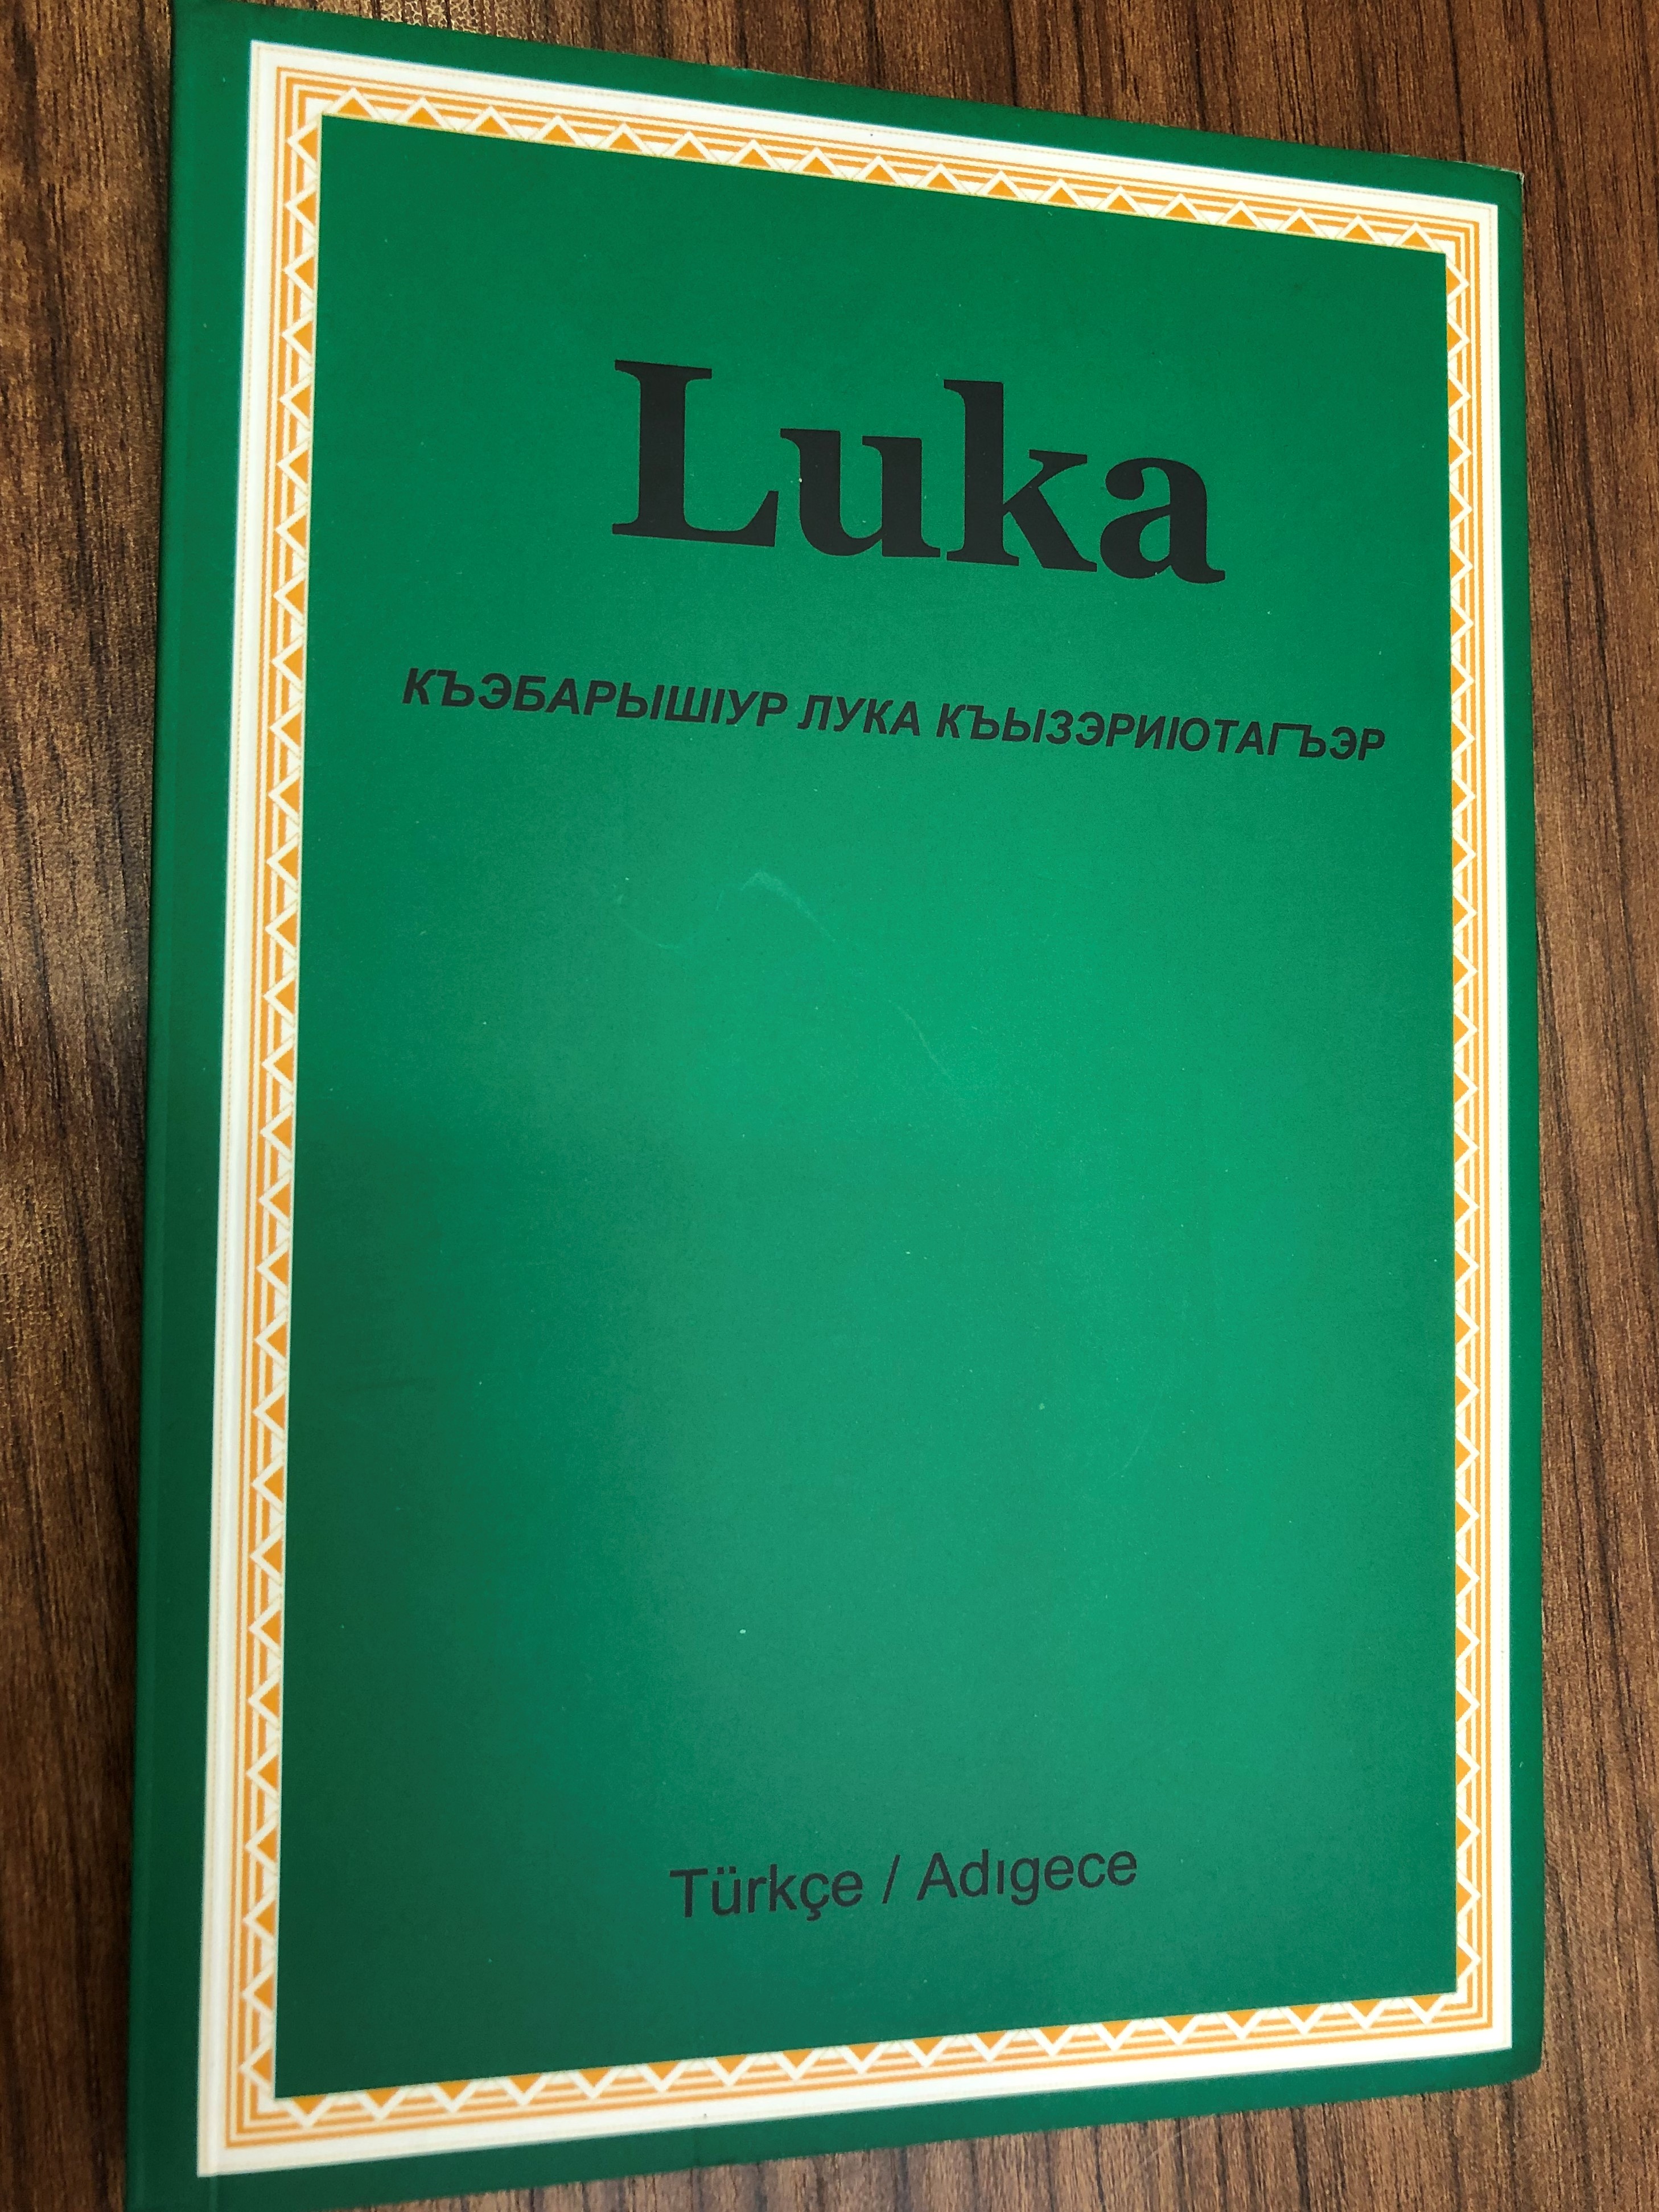 luka-luka-ya-g-re-isa-mesih-in-yasami-turkish-adyghe-west-circassan-language-gospel-of-luke-great-for-outreach-kitabi-mukkades-sirketi-2009-1-.jpg